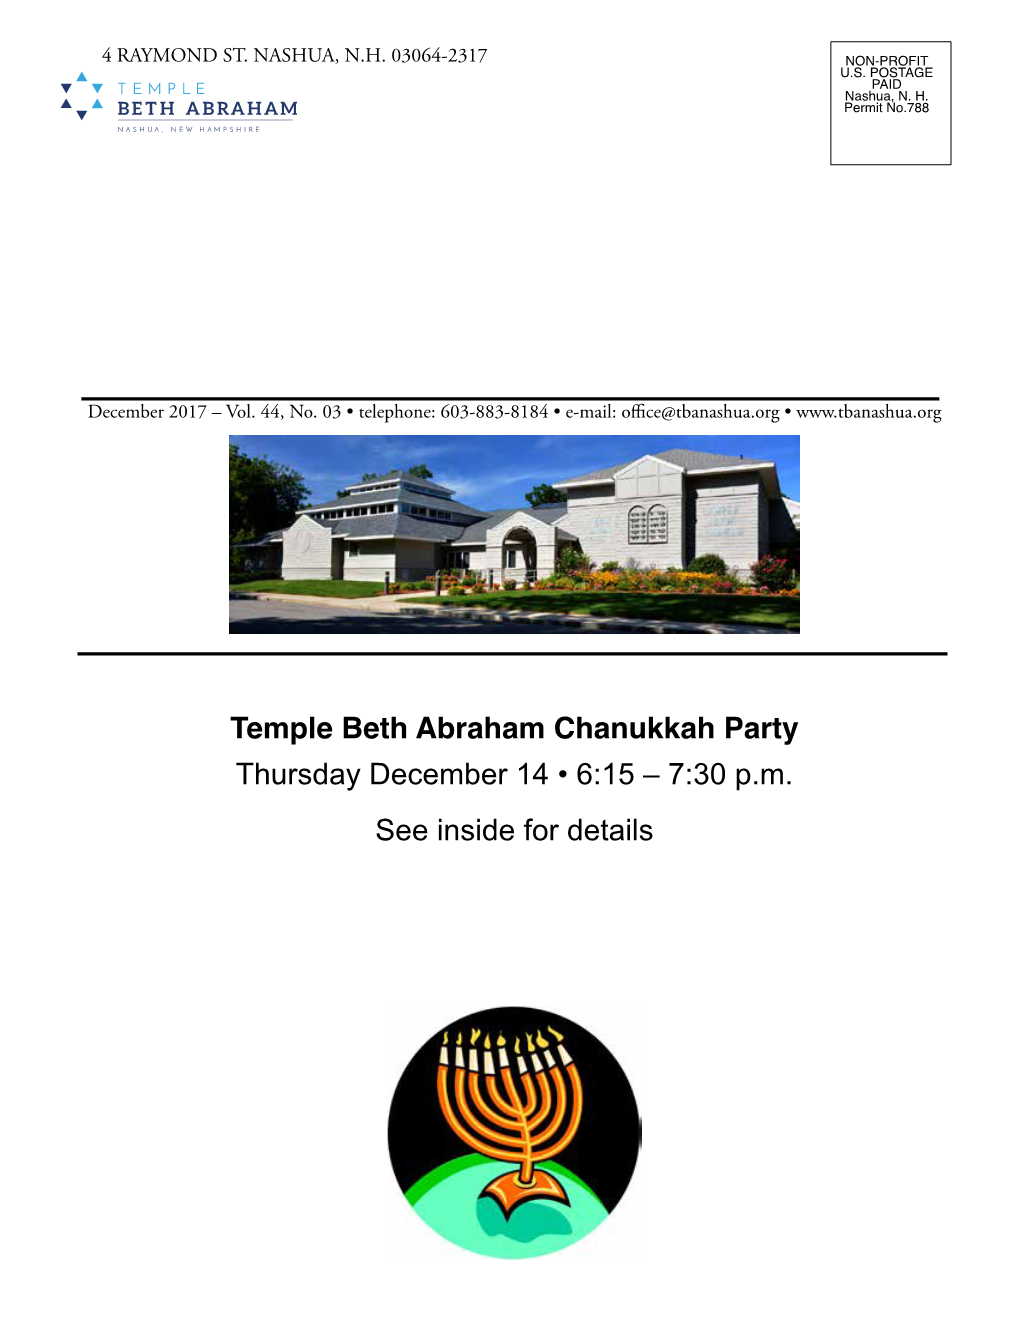 Temple Beth Abraham Chanukkah Party Thursday December 14 • 6:15 – 7:30 P.M